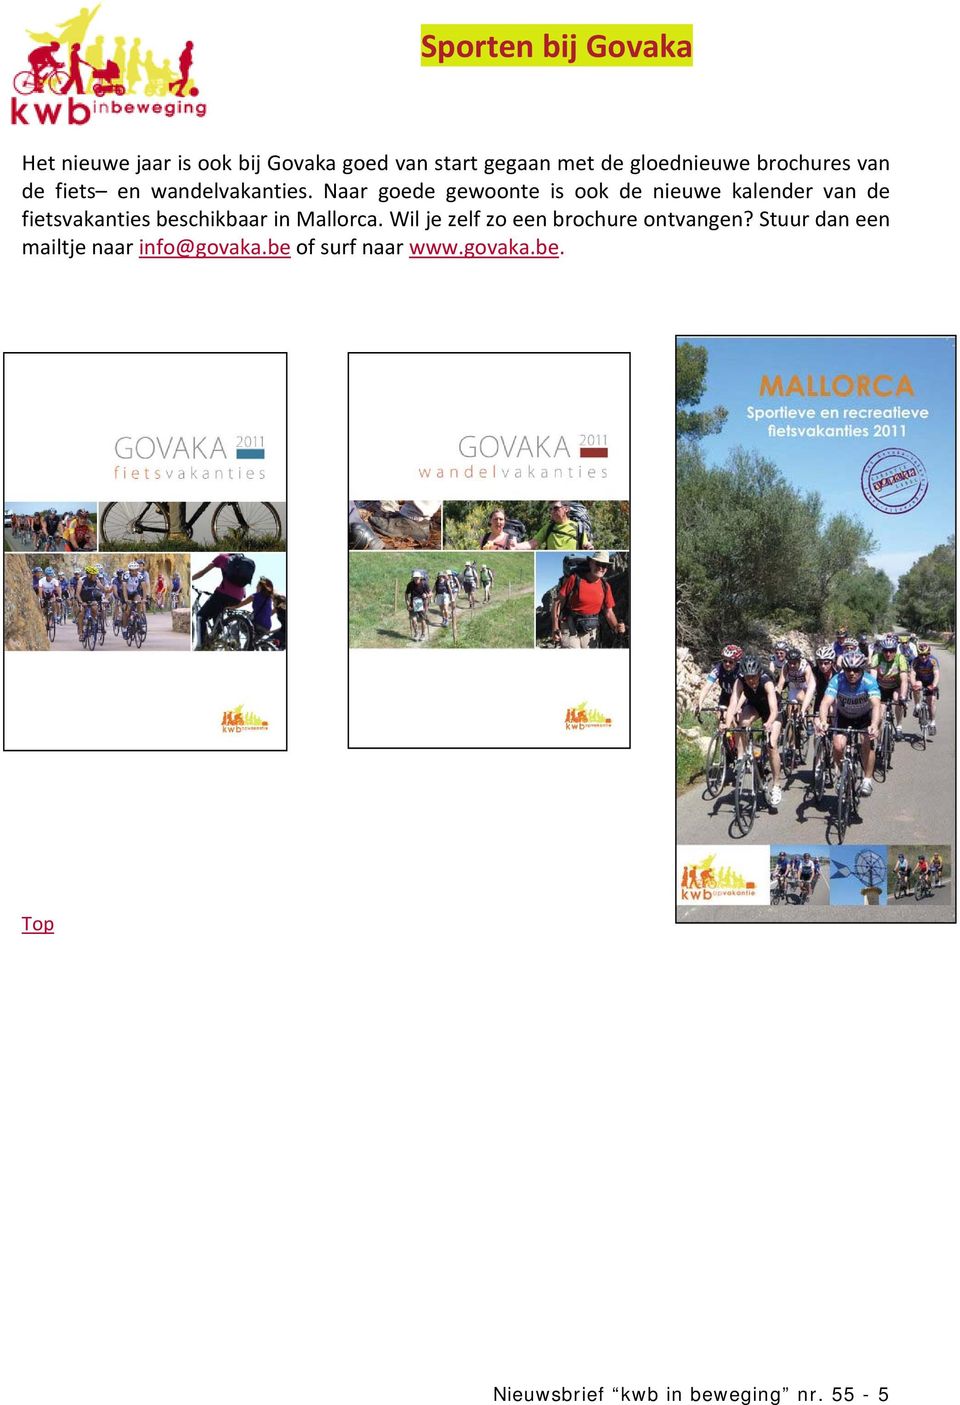 Naar goede gewoonte is ook de nieuwe kalender van de fietsvakanties beschikbaar in Mallorca.